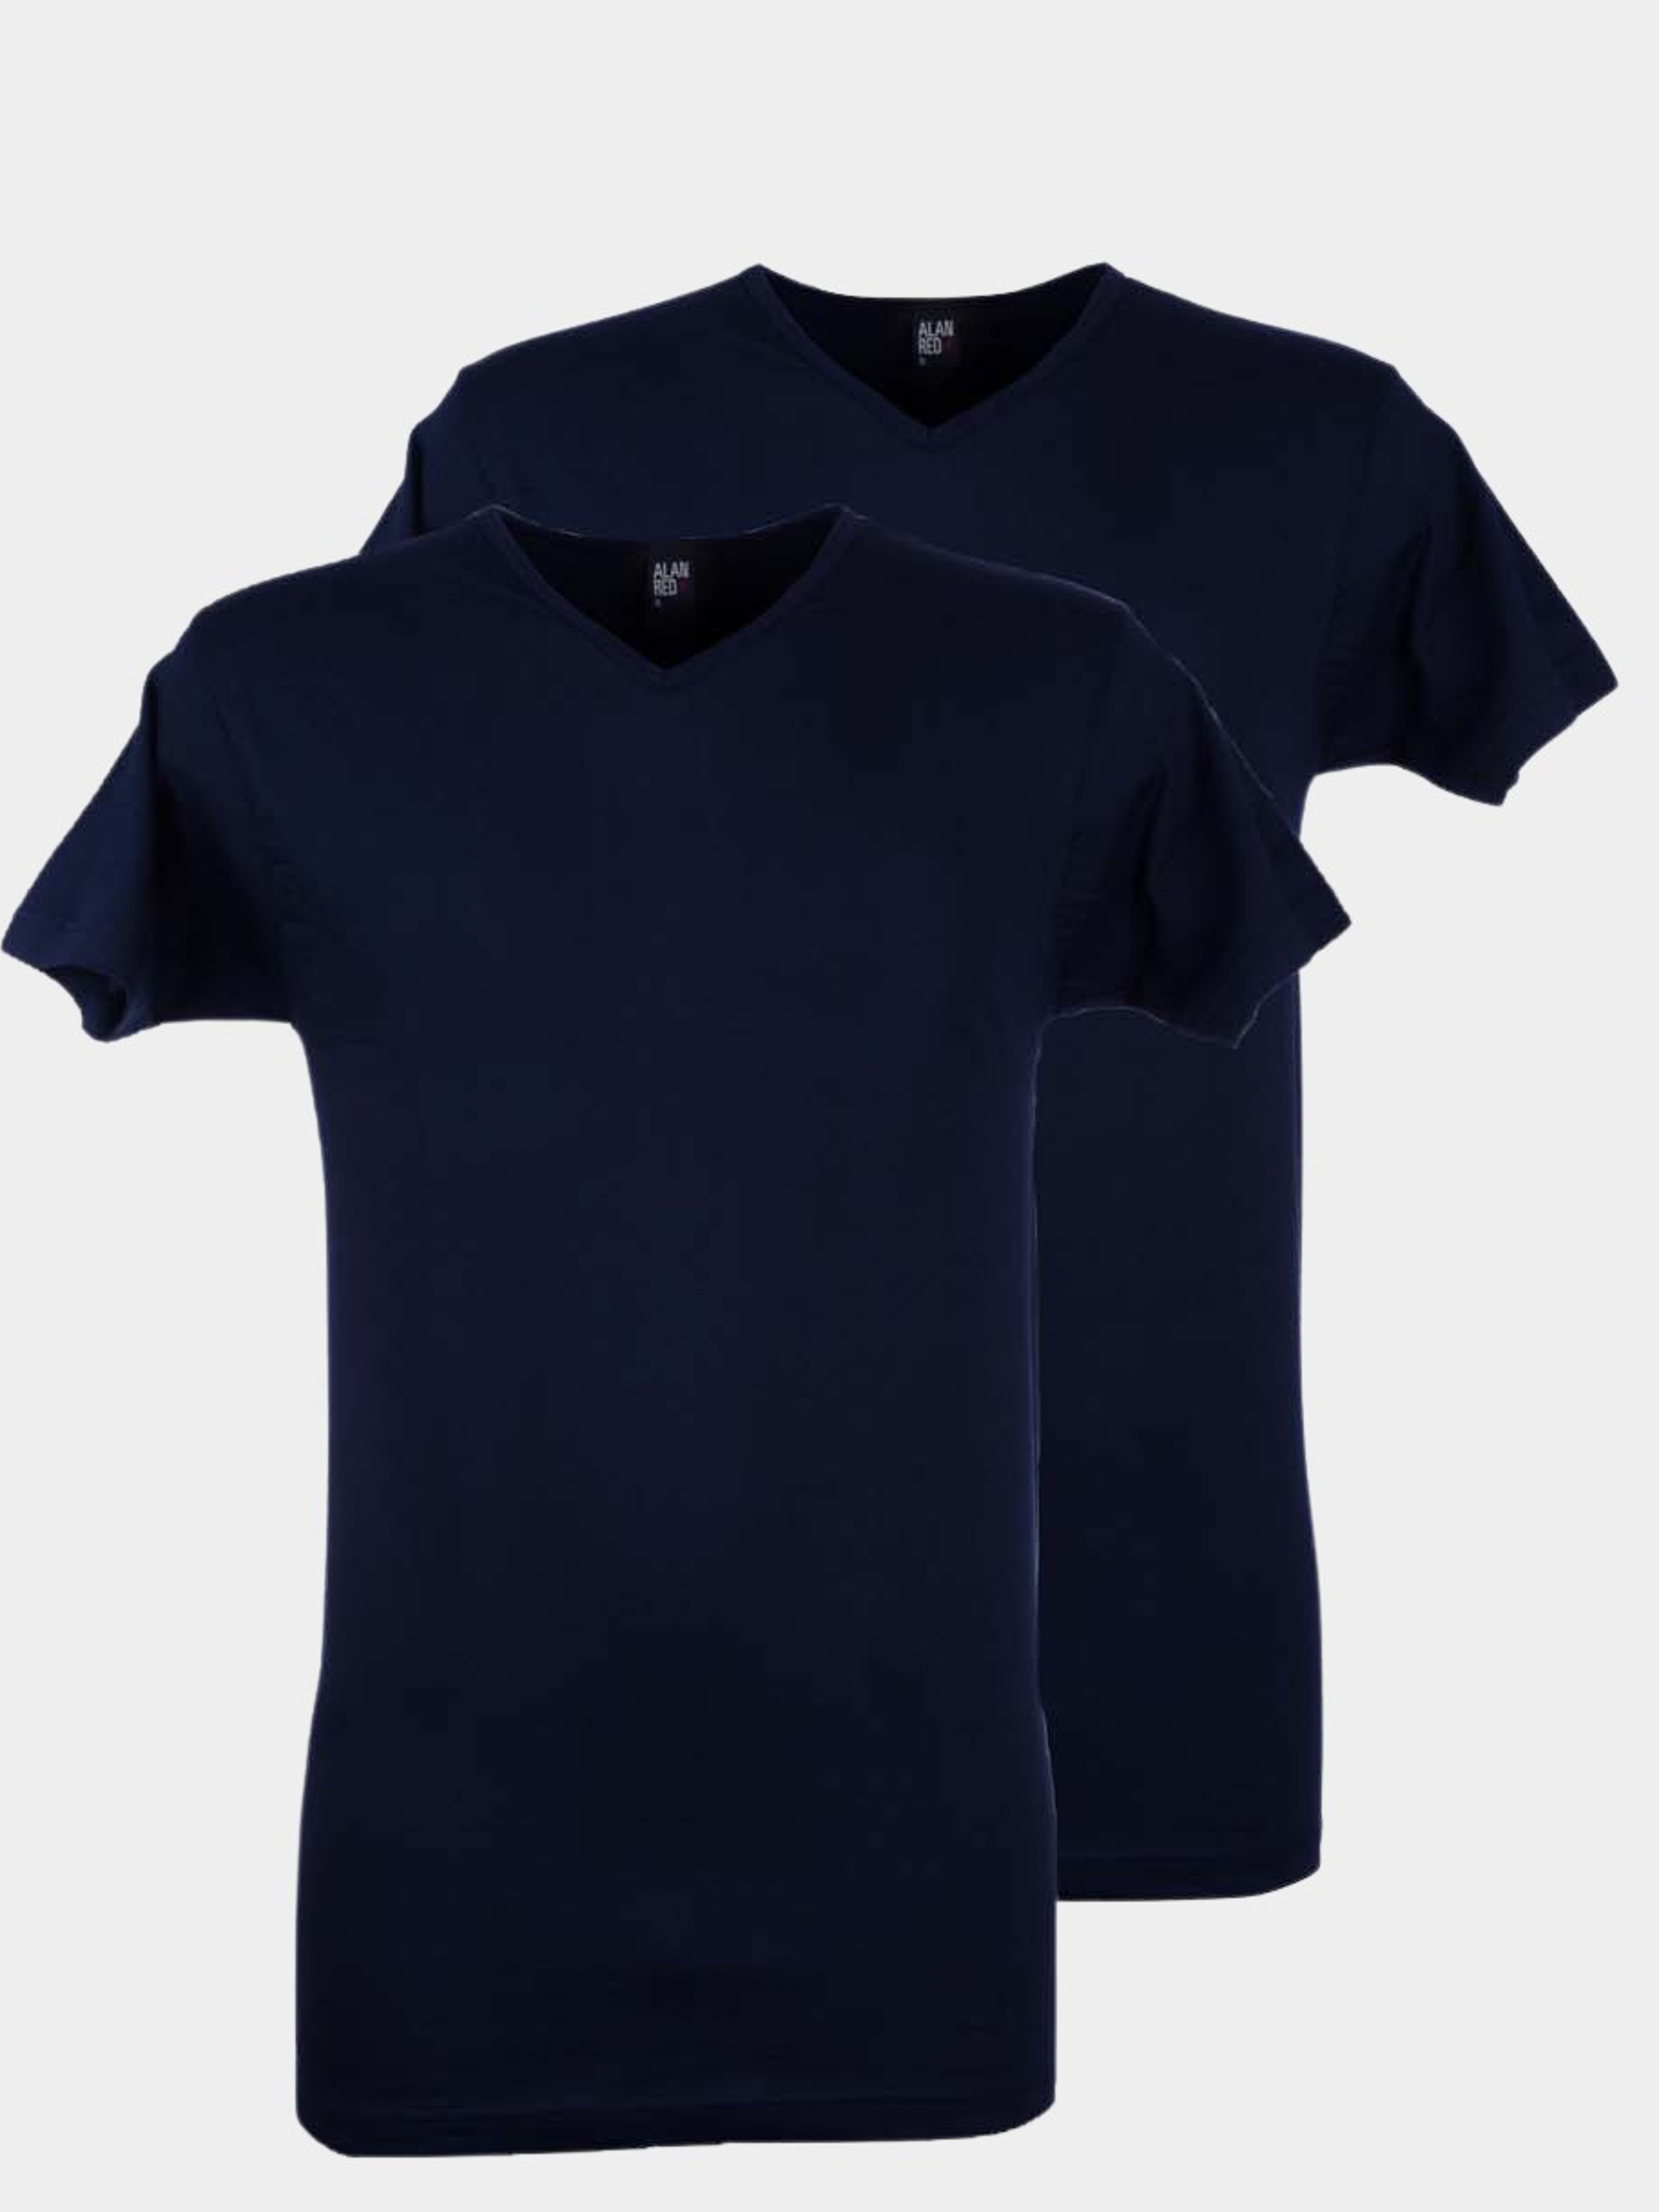 Afbeelding van Alan Red T-shirt vermont navy v-hals 2-pack 6671.2/06